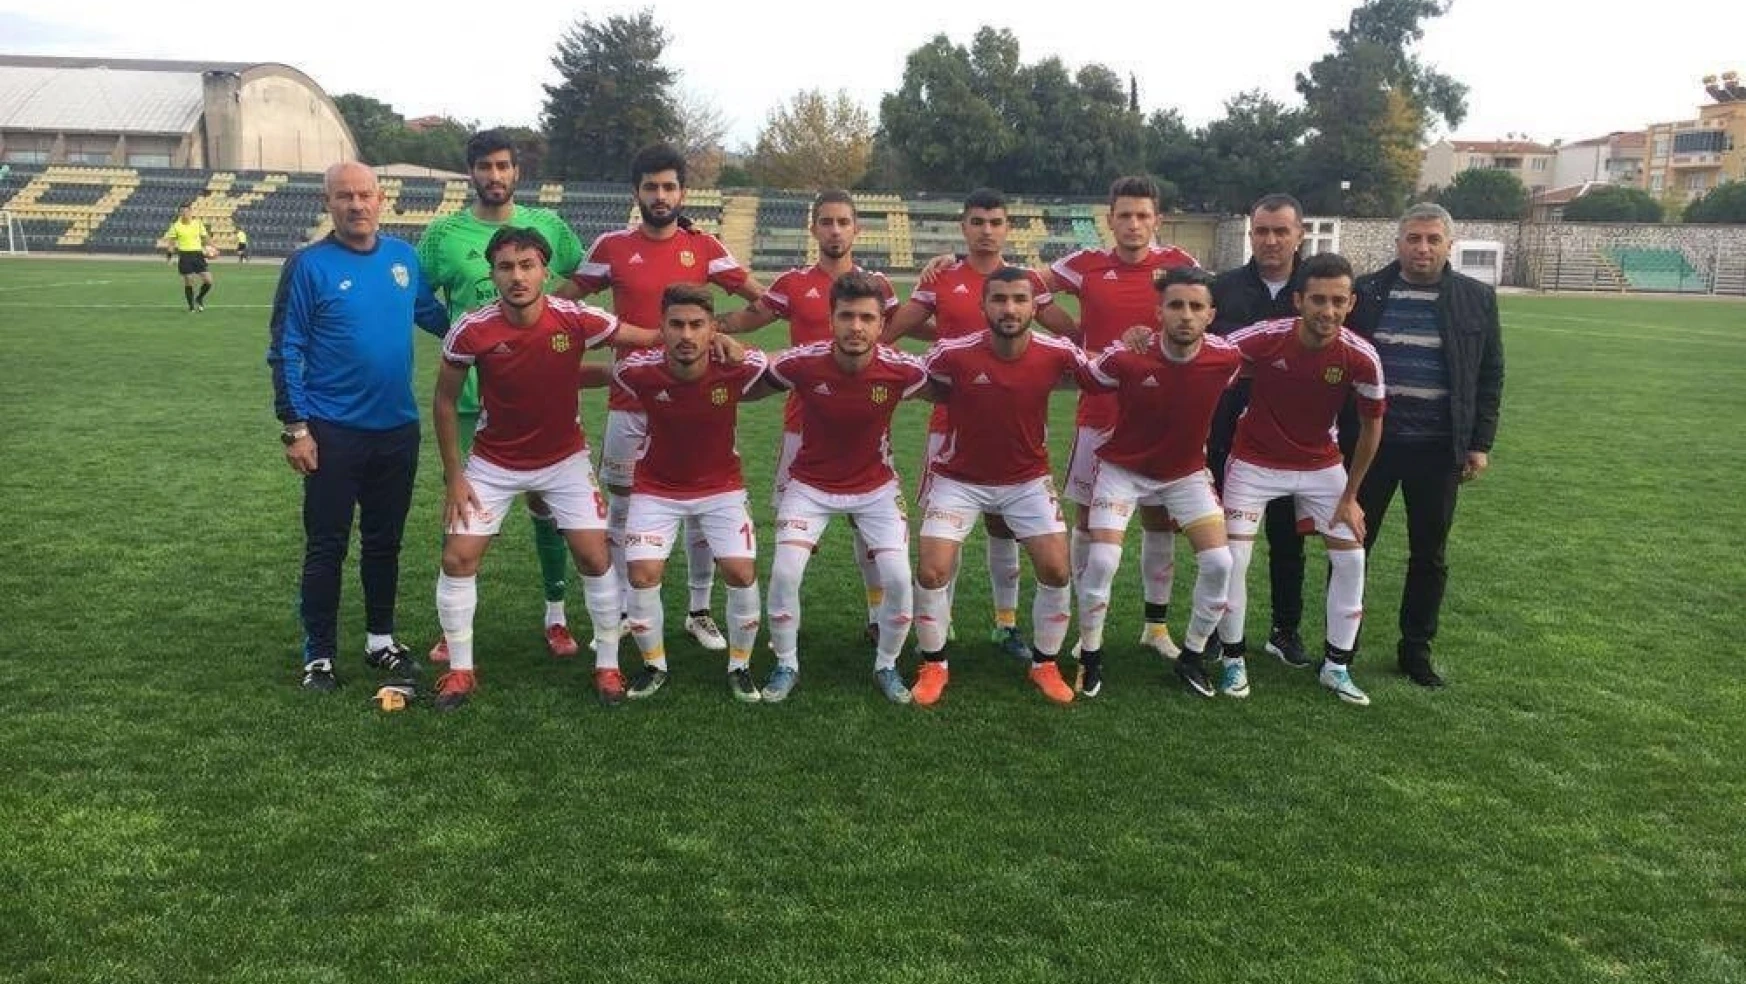 Yeni Malatyaspor U21 takımında galibiyet özlemi sona erdi
